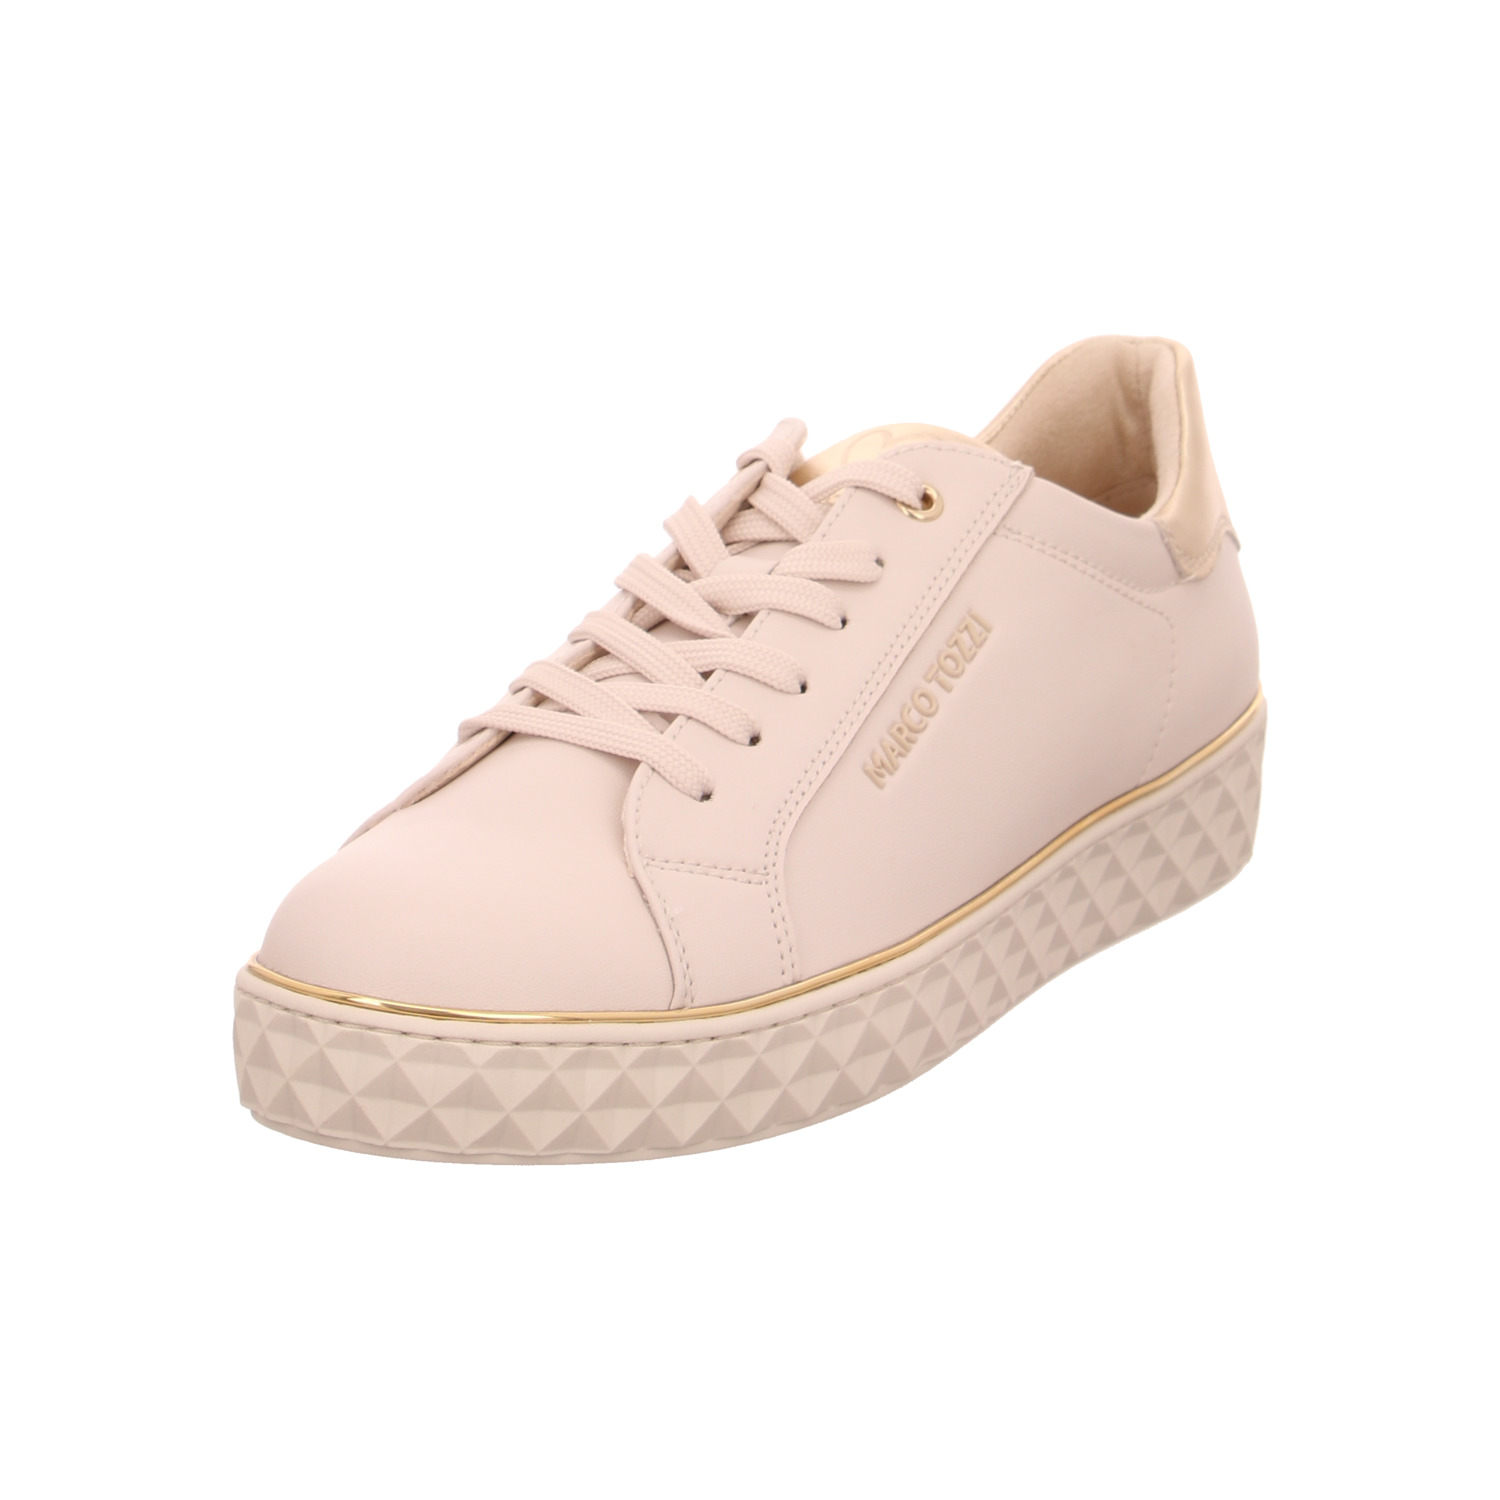 marco-tozzi-sneaker-beige_124491-1